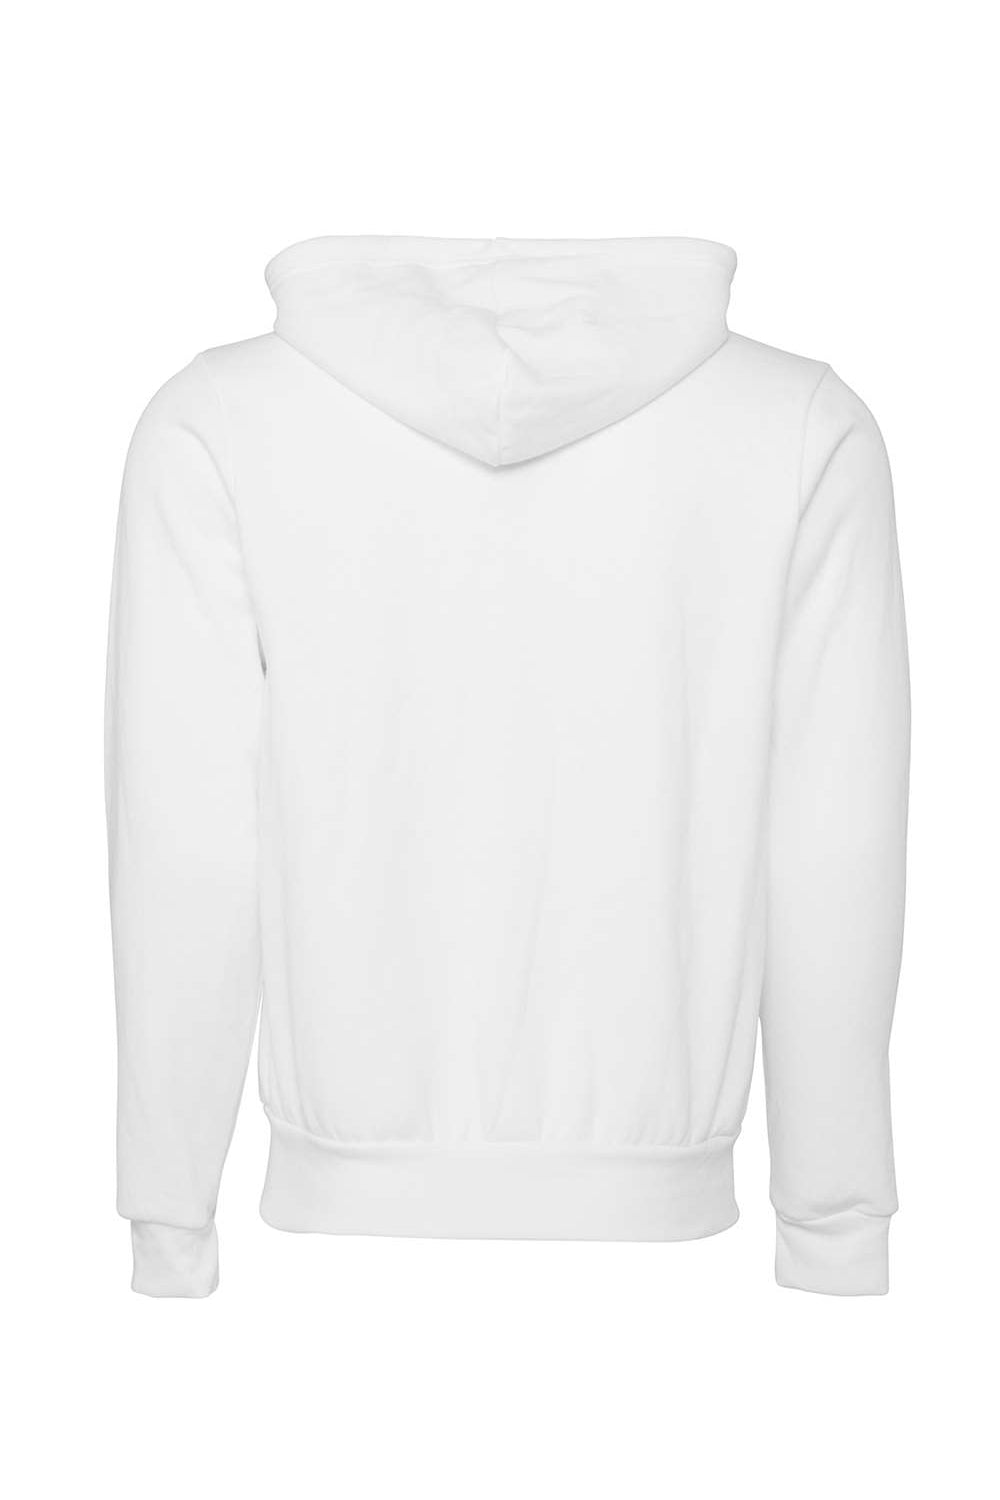 Bella + Canvas BC3739/3739 Mens Fleece Full Zip Hooded Sweatshirt Hoodie DTG White Flat Back